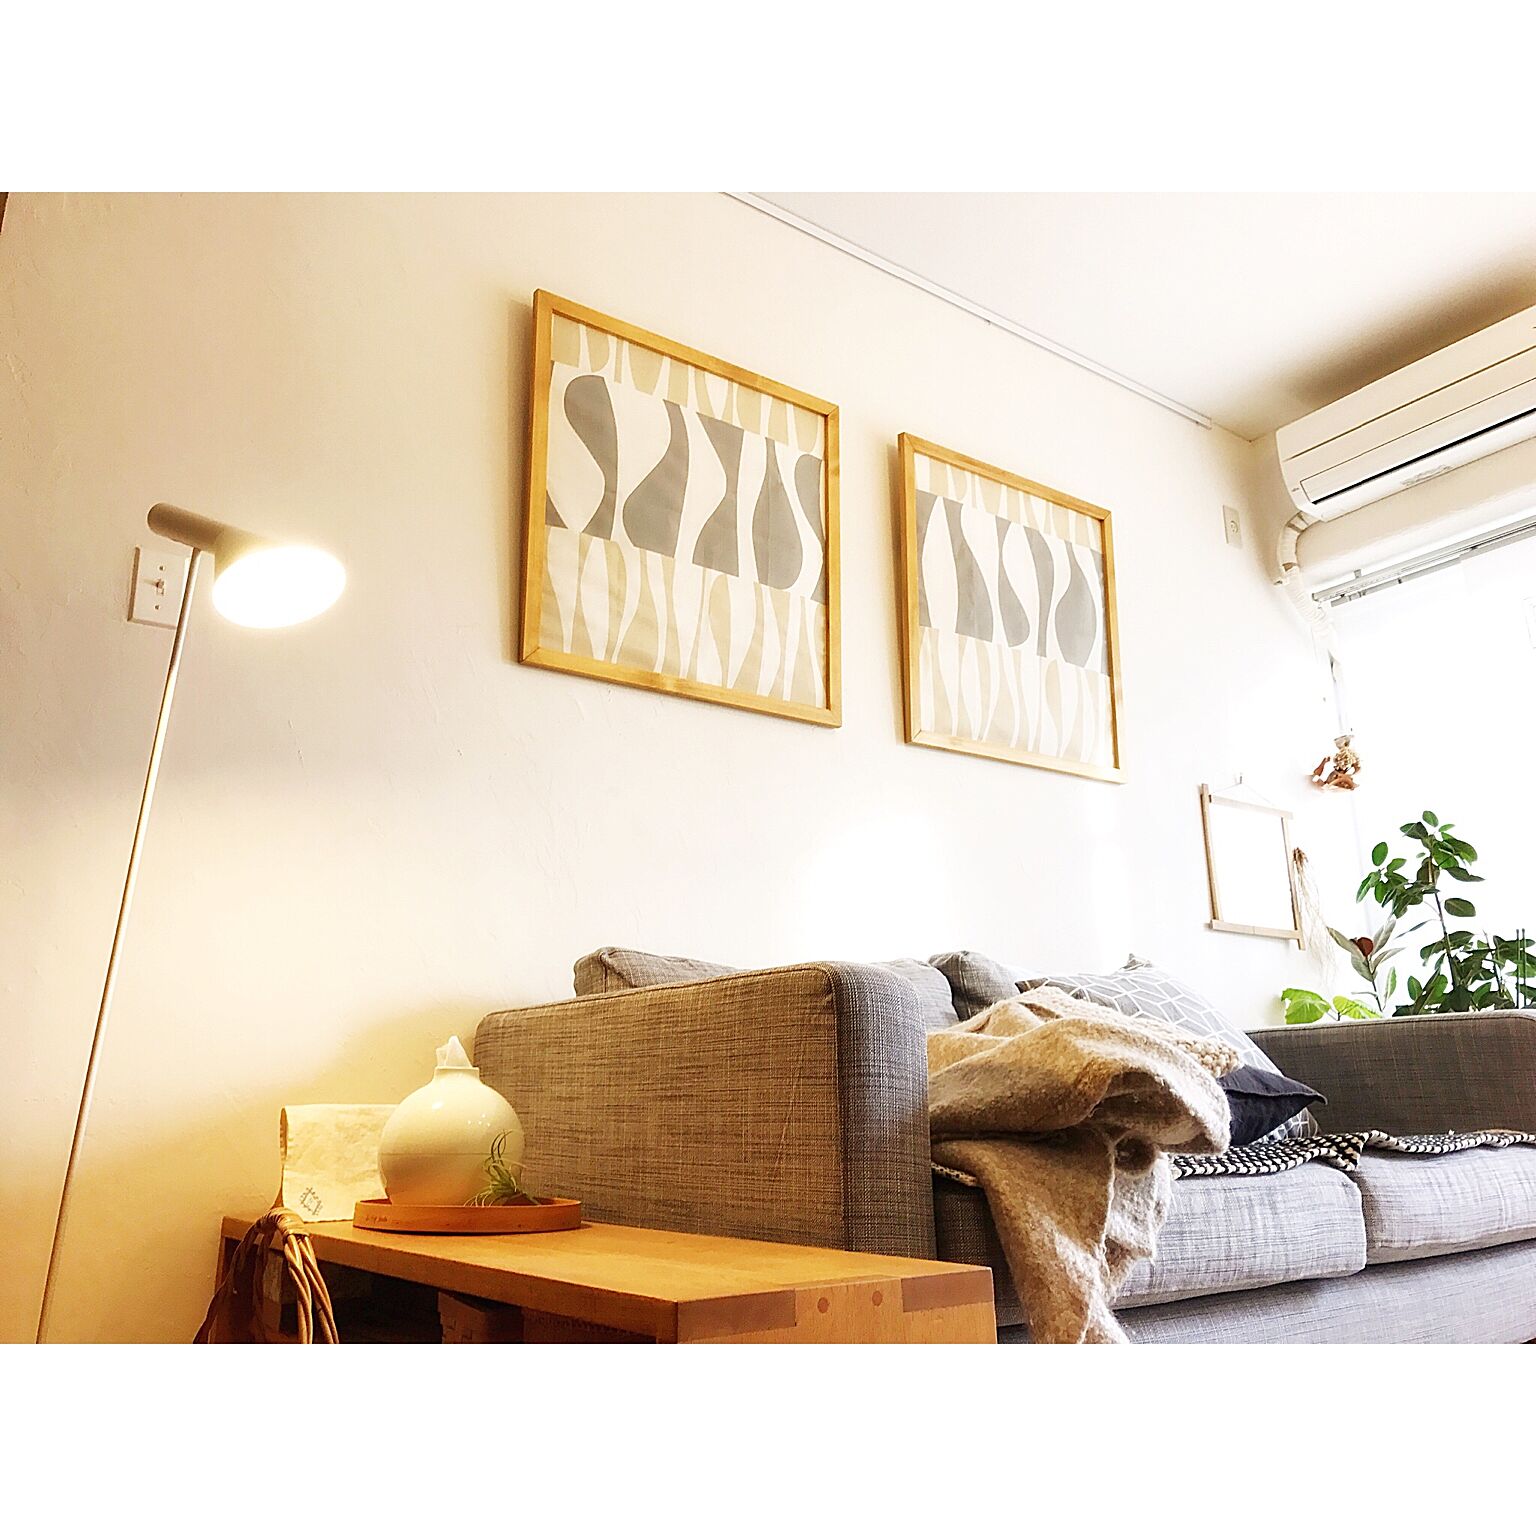 壁面を楽しむ ピクチャーレールを活用する10の方法 Roomclip Mag 暮らしとインテリアのwebマガジン